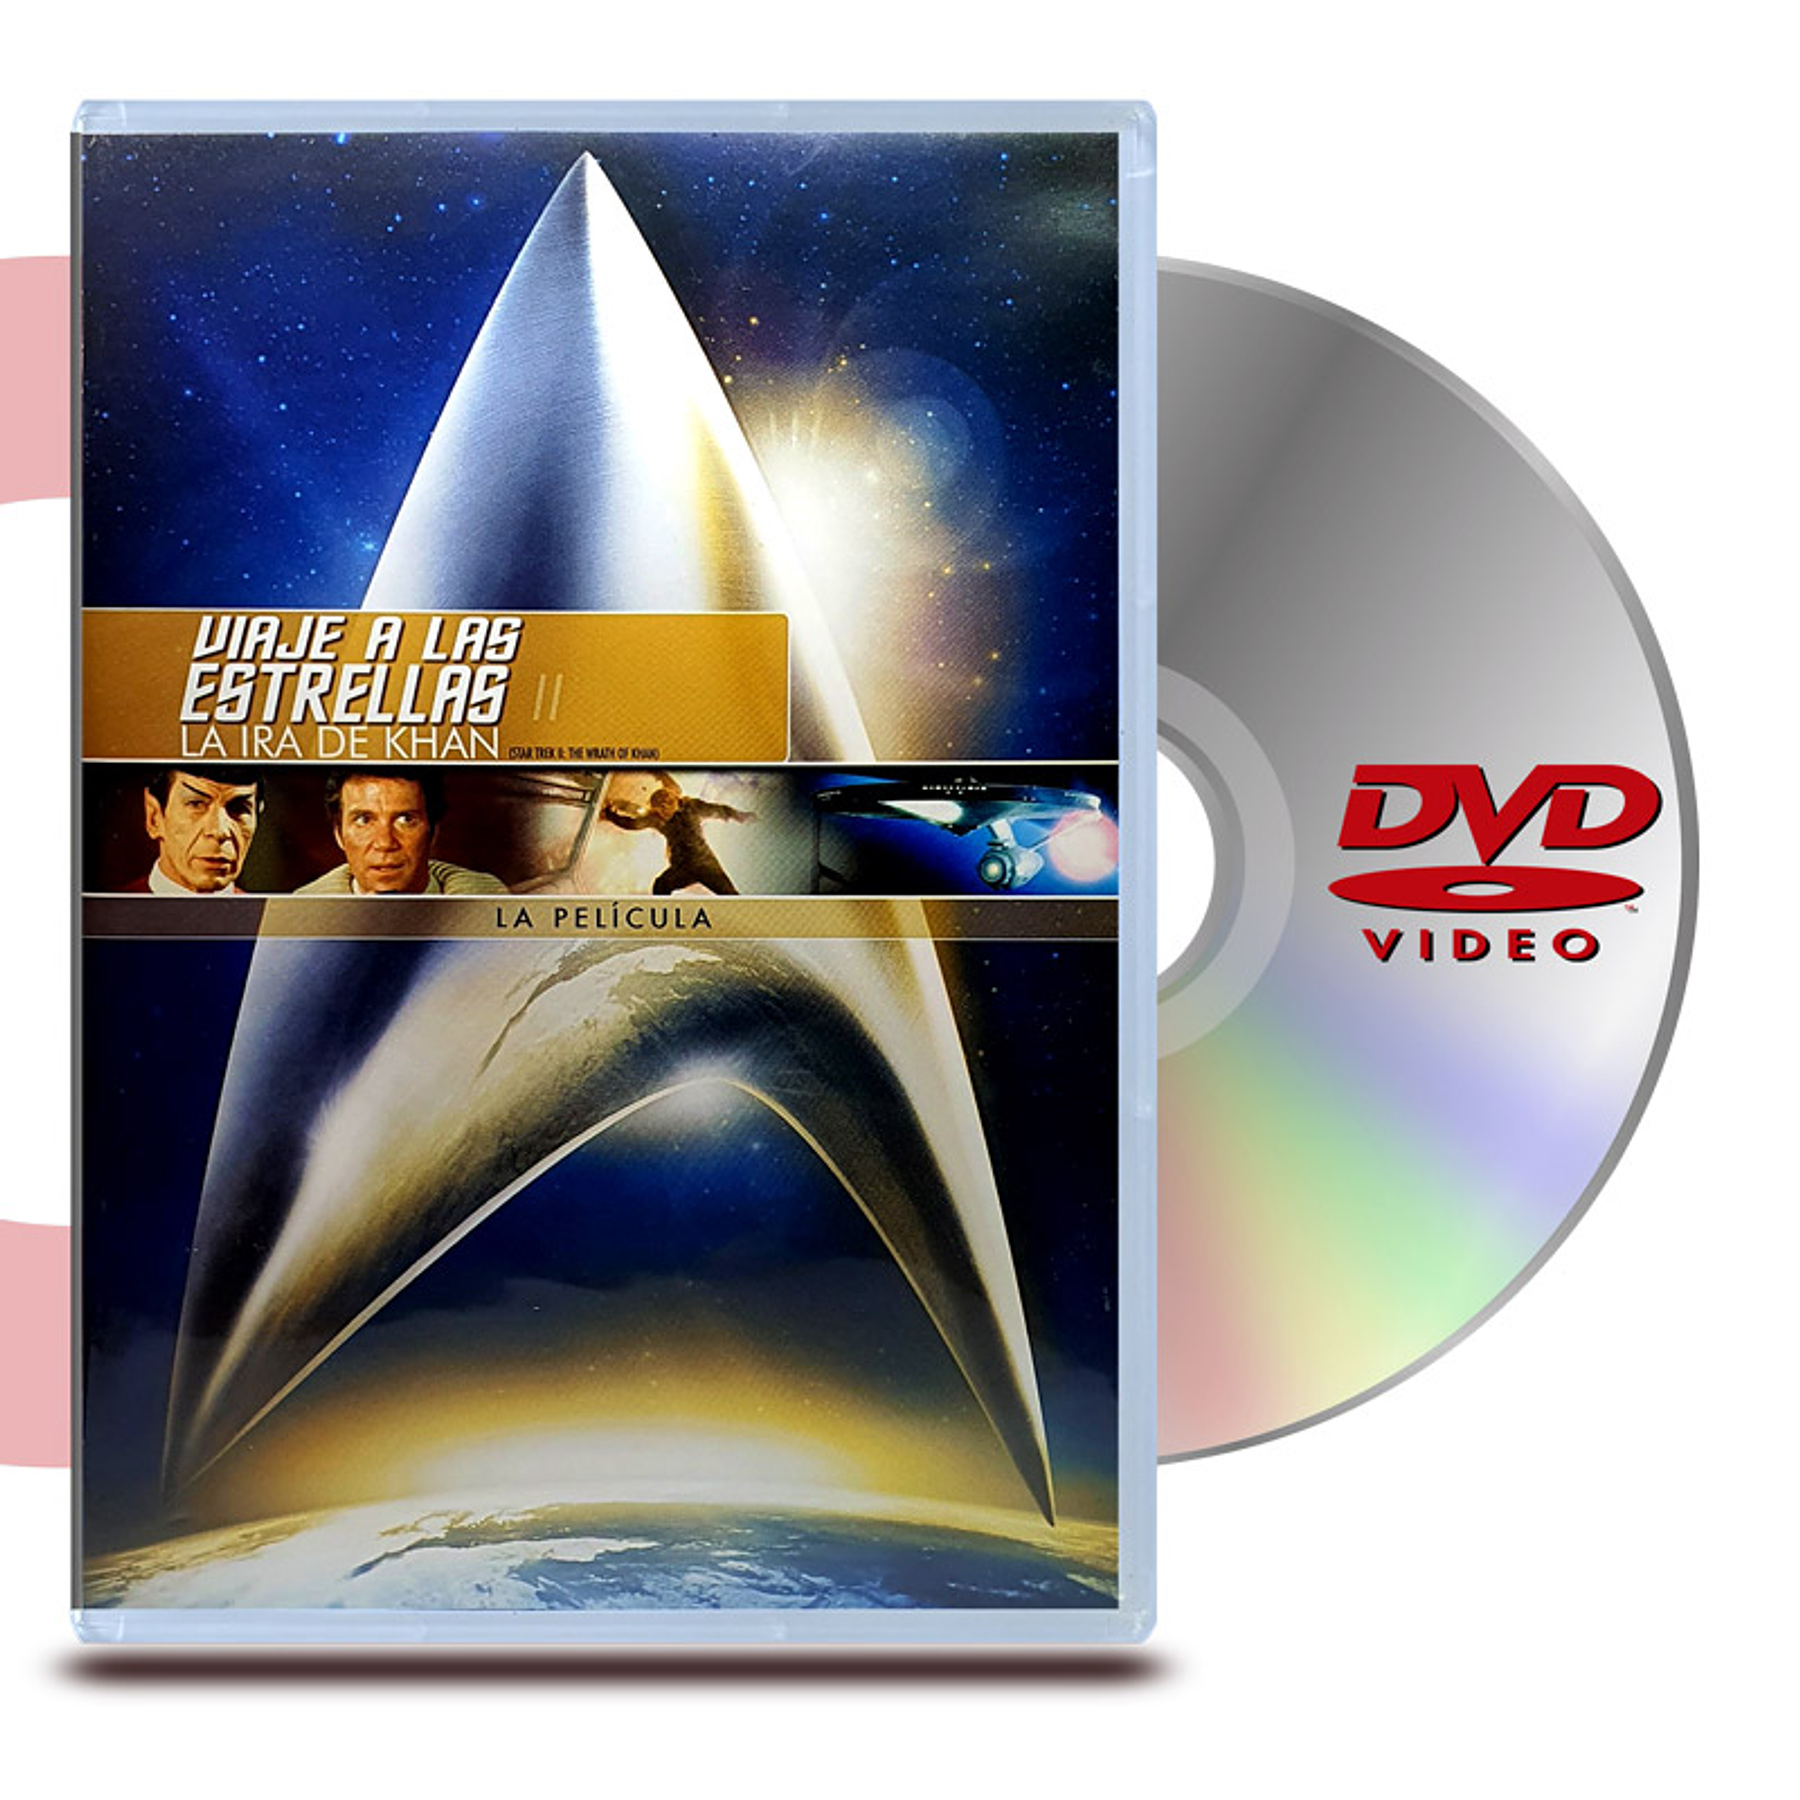 DVD STAR TREK 2 LA IRA DE KHAN - VIAJE A LAS ESTRELLAS 2